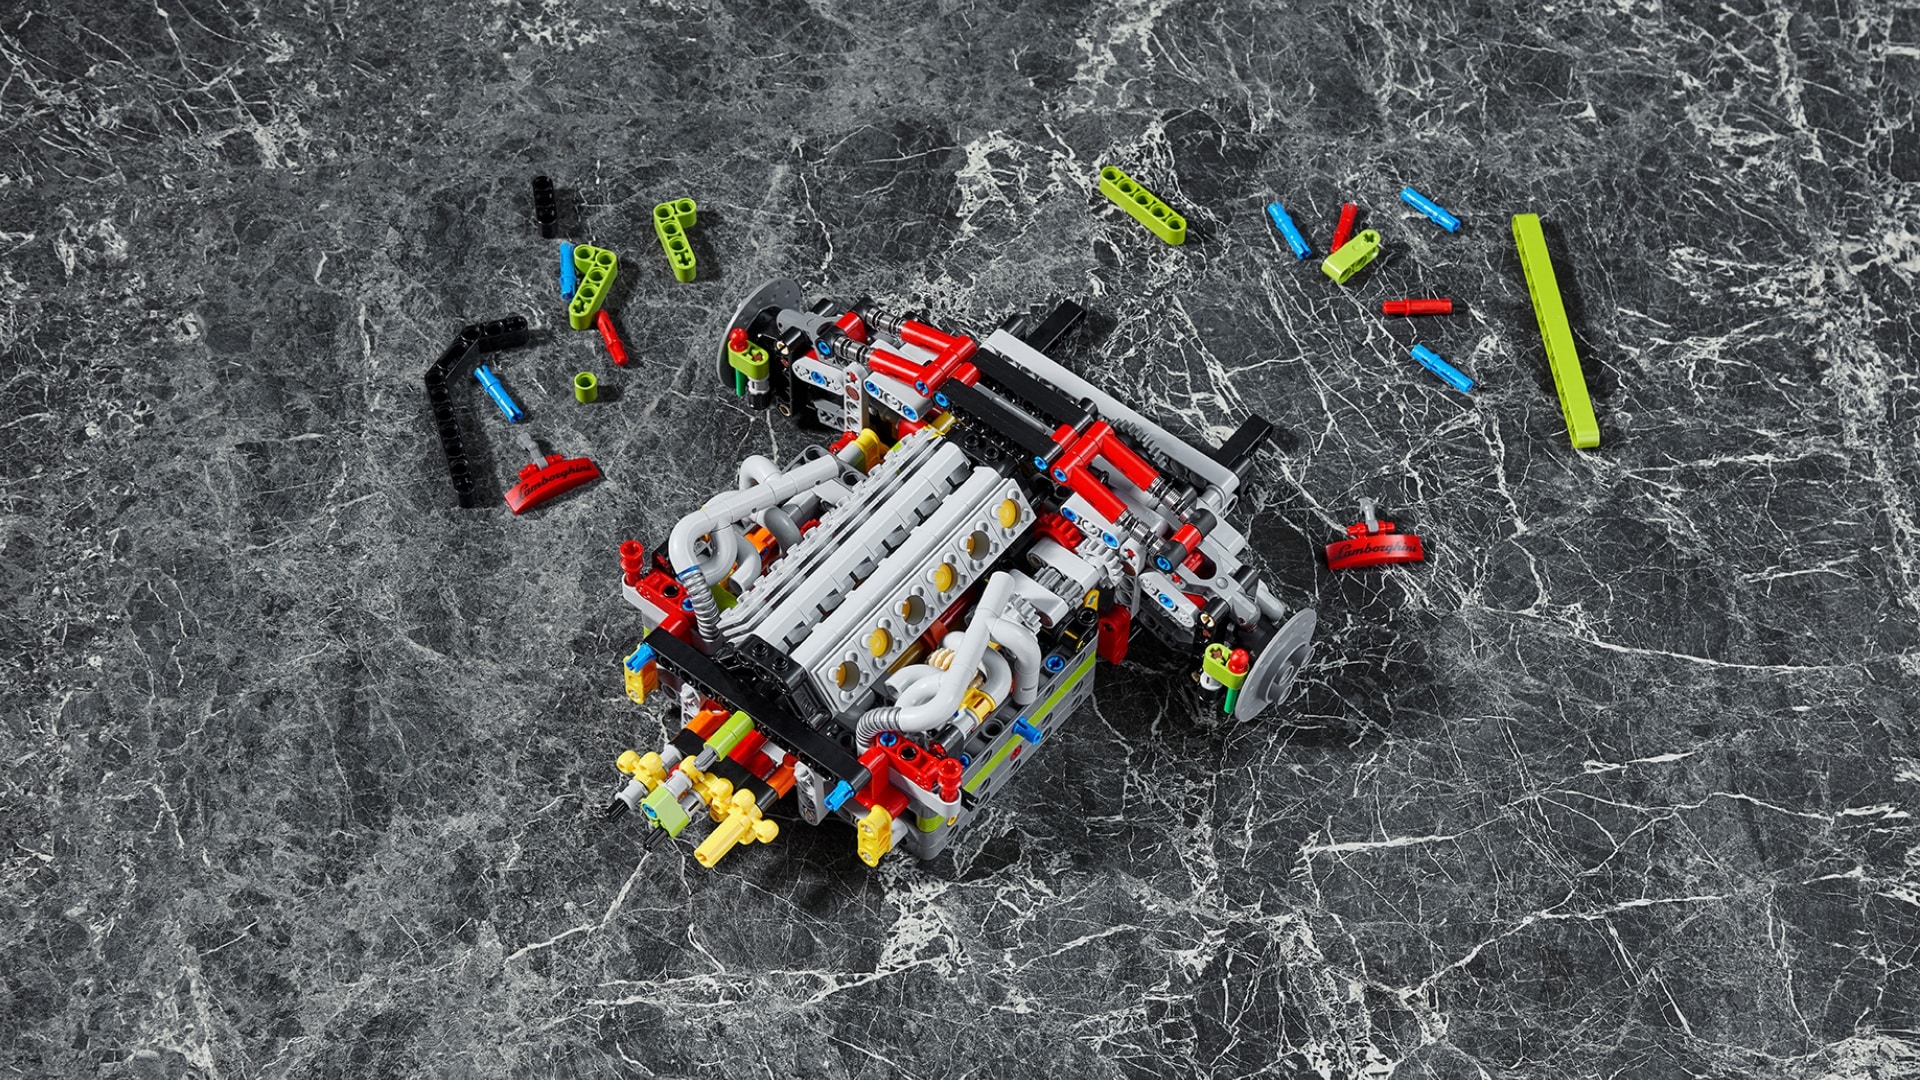 Lamborghini and LEGO Group recreate the Sián FKP 37